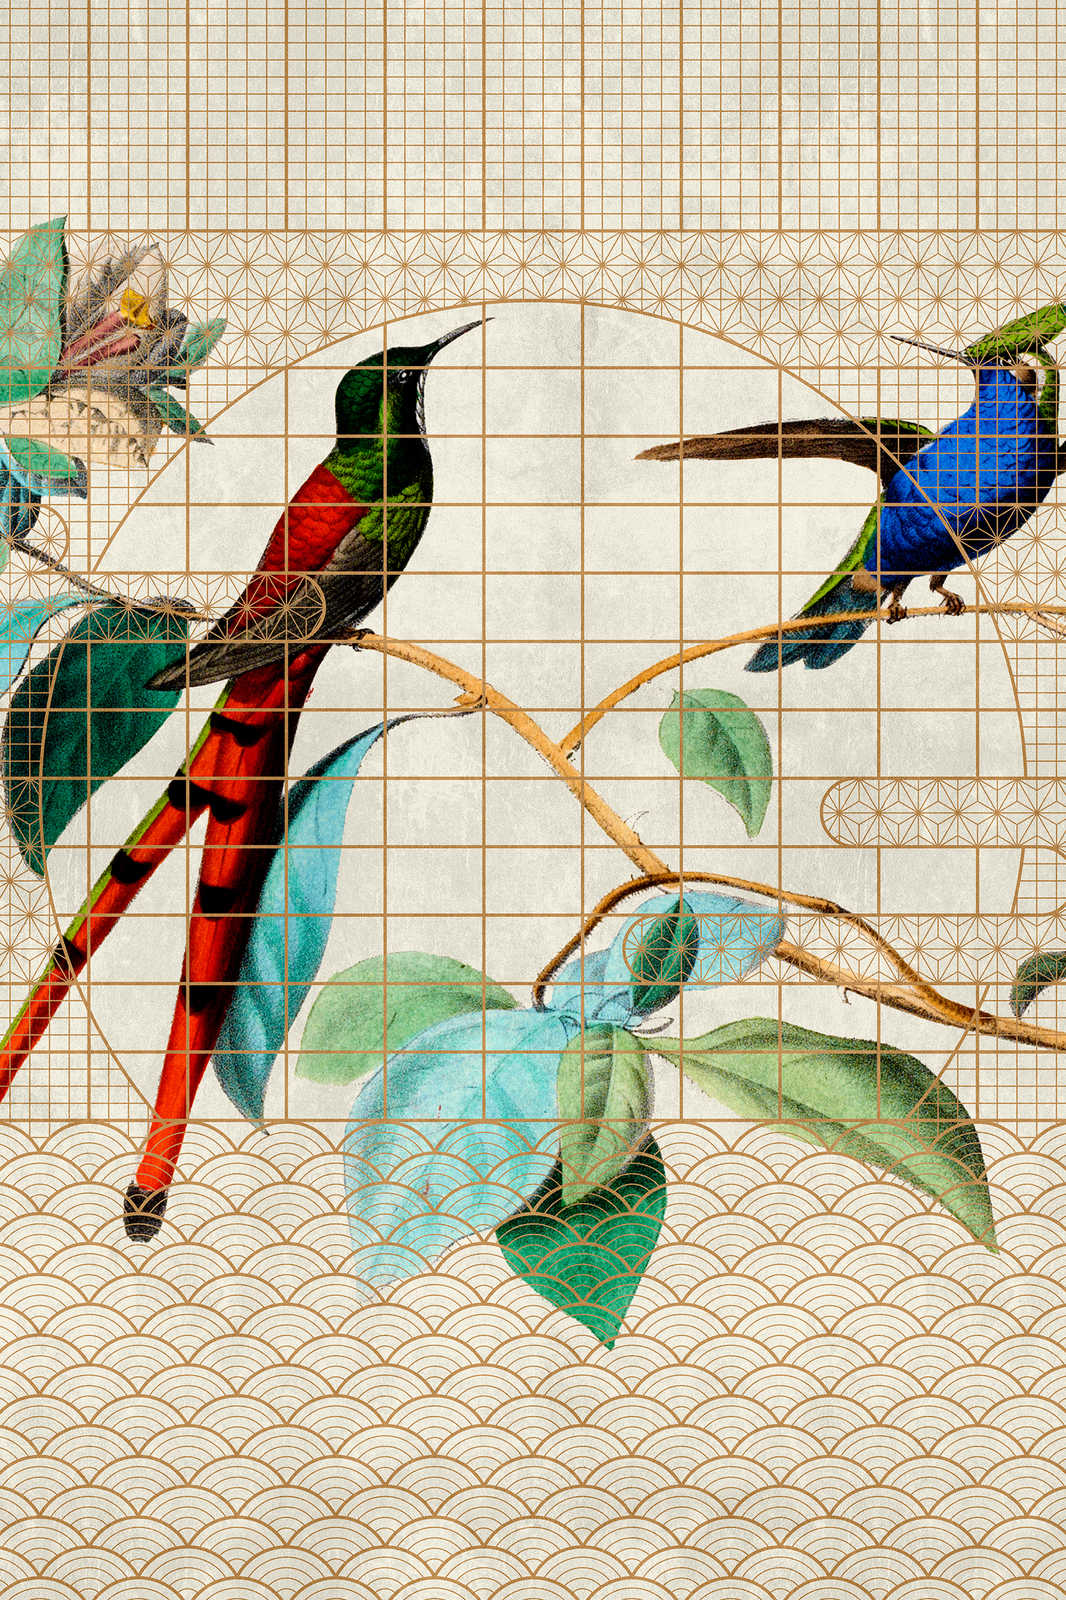             Volière 2 - Oiseaux toile oiseaux chanteurs dans une cage dorée - 1,20 m x 0,80 m
        